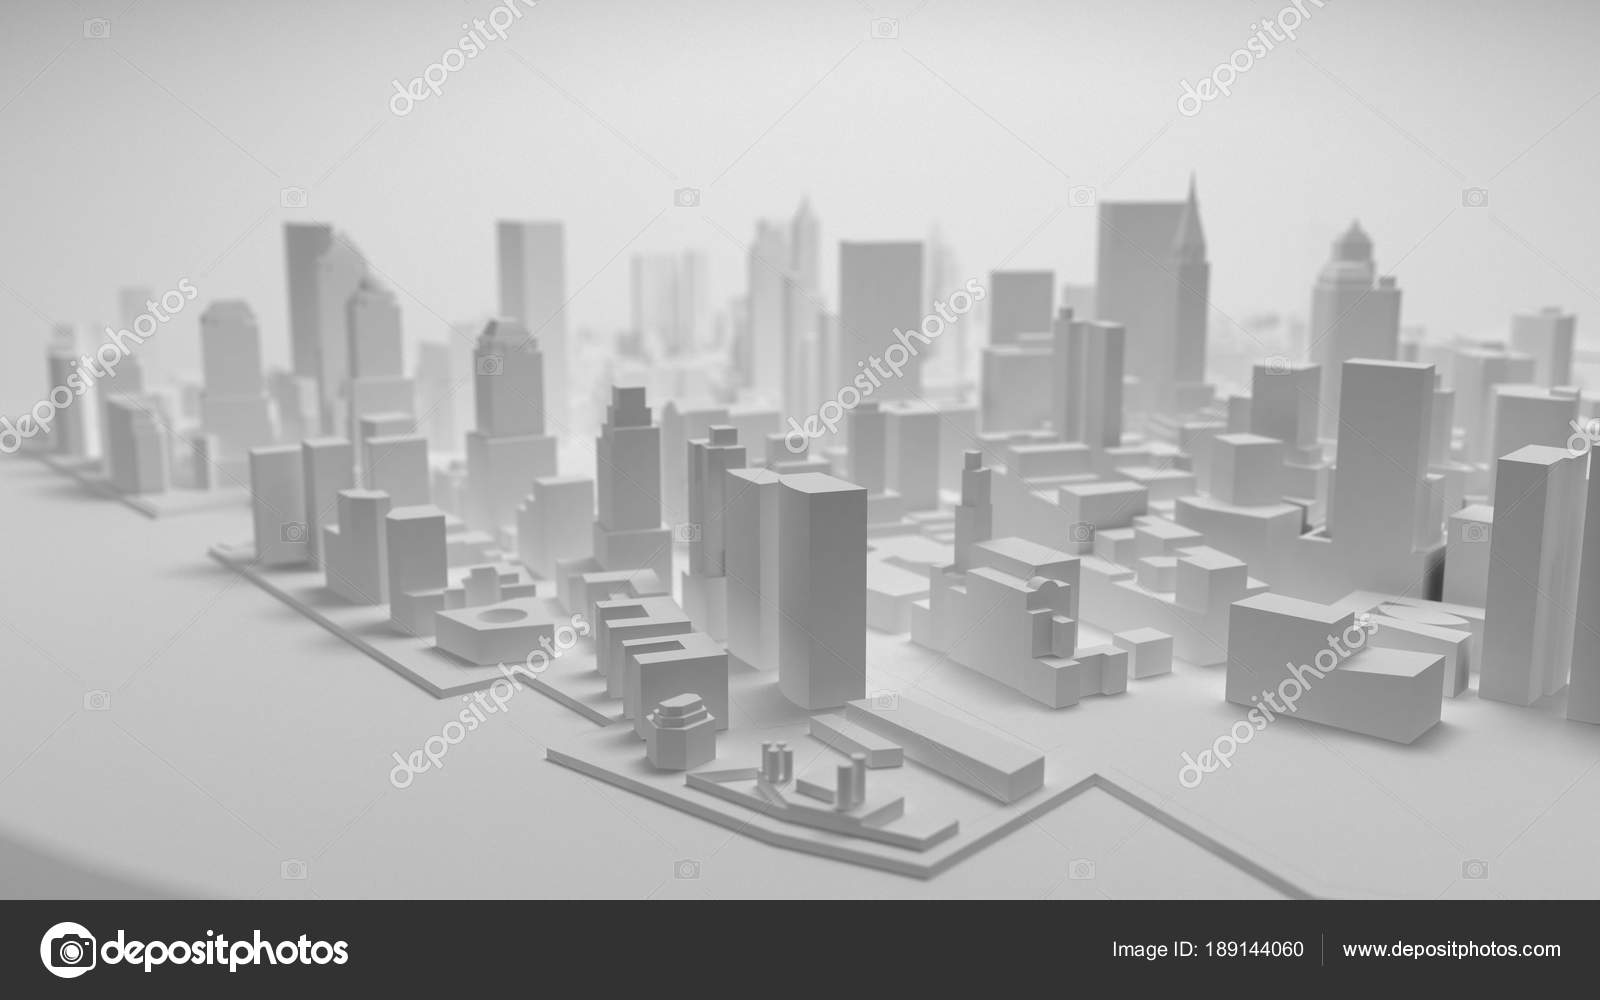 Thành phố 3D trên nền trắng: Khám phá ngay hình ảnh về thành phố 3D được thiết kế đẹp mắt, sống động với nền trắng tinh khôi trên toàn bộ bức tranh ảnh. Hãy để mắt nhìn và tưởng tượng sự sống động của thành phố này trên bức tường nhà bạn!